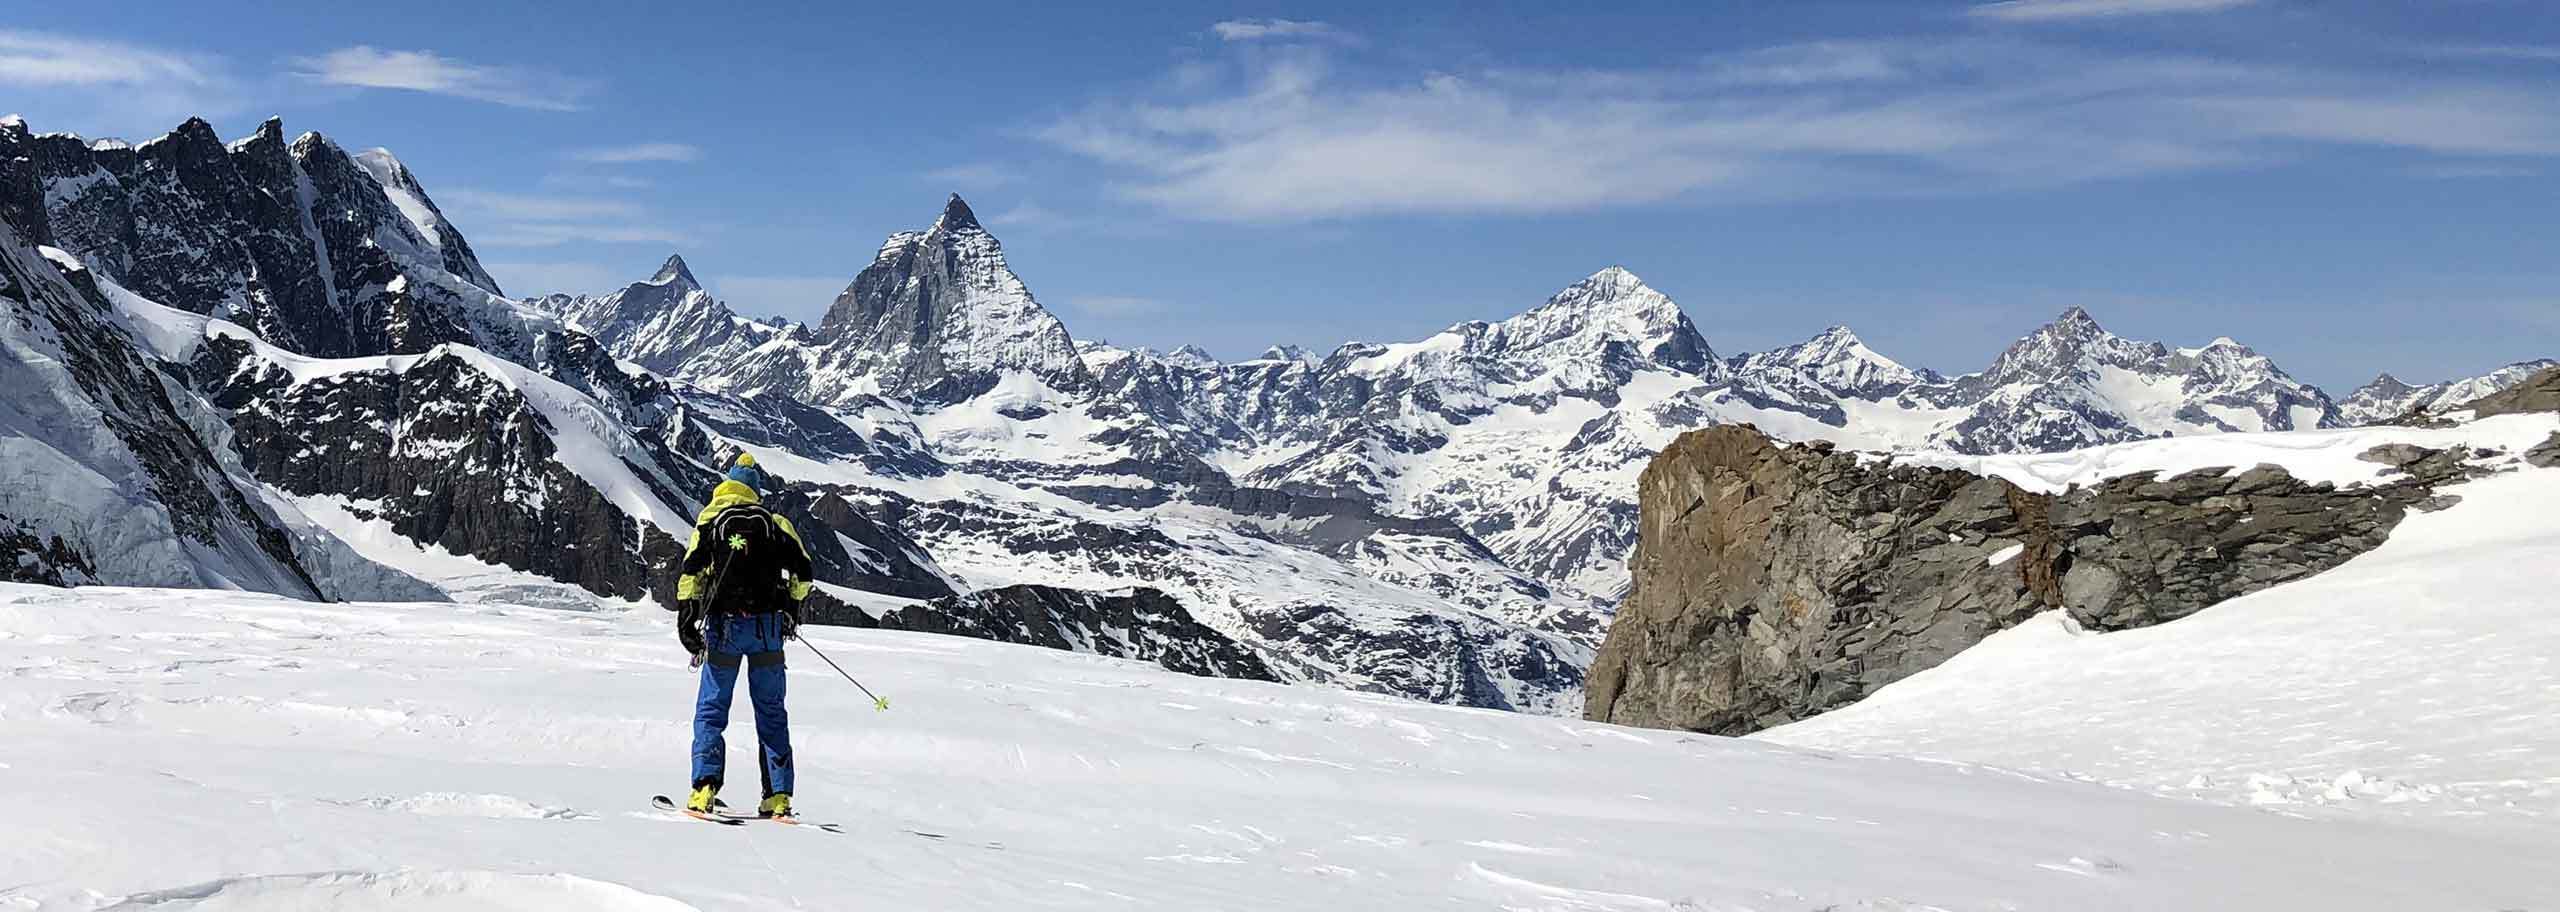 Cervino Guide Alpine